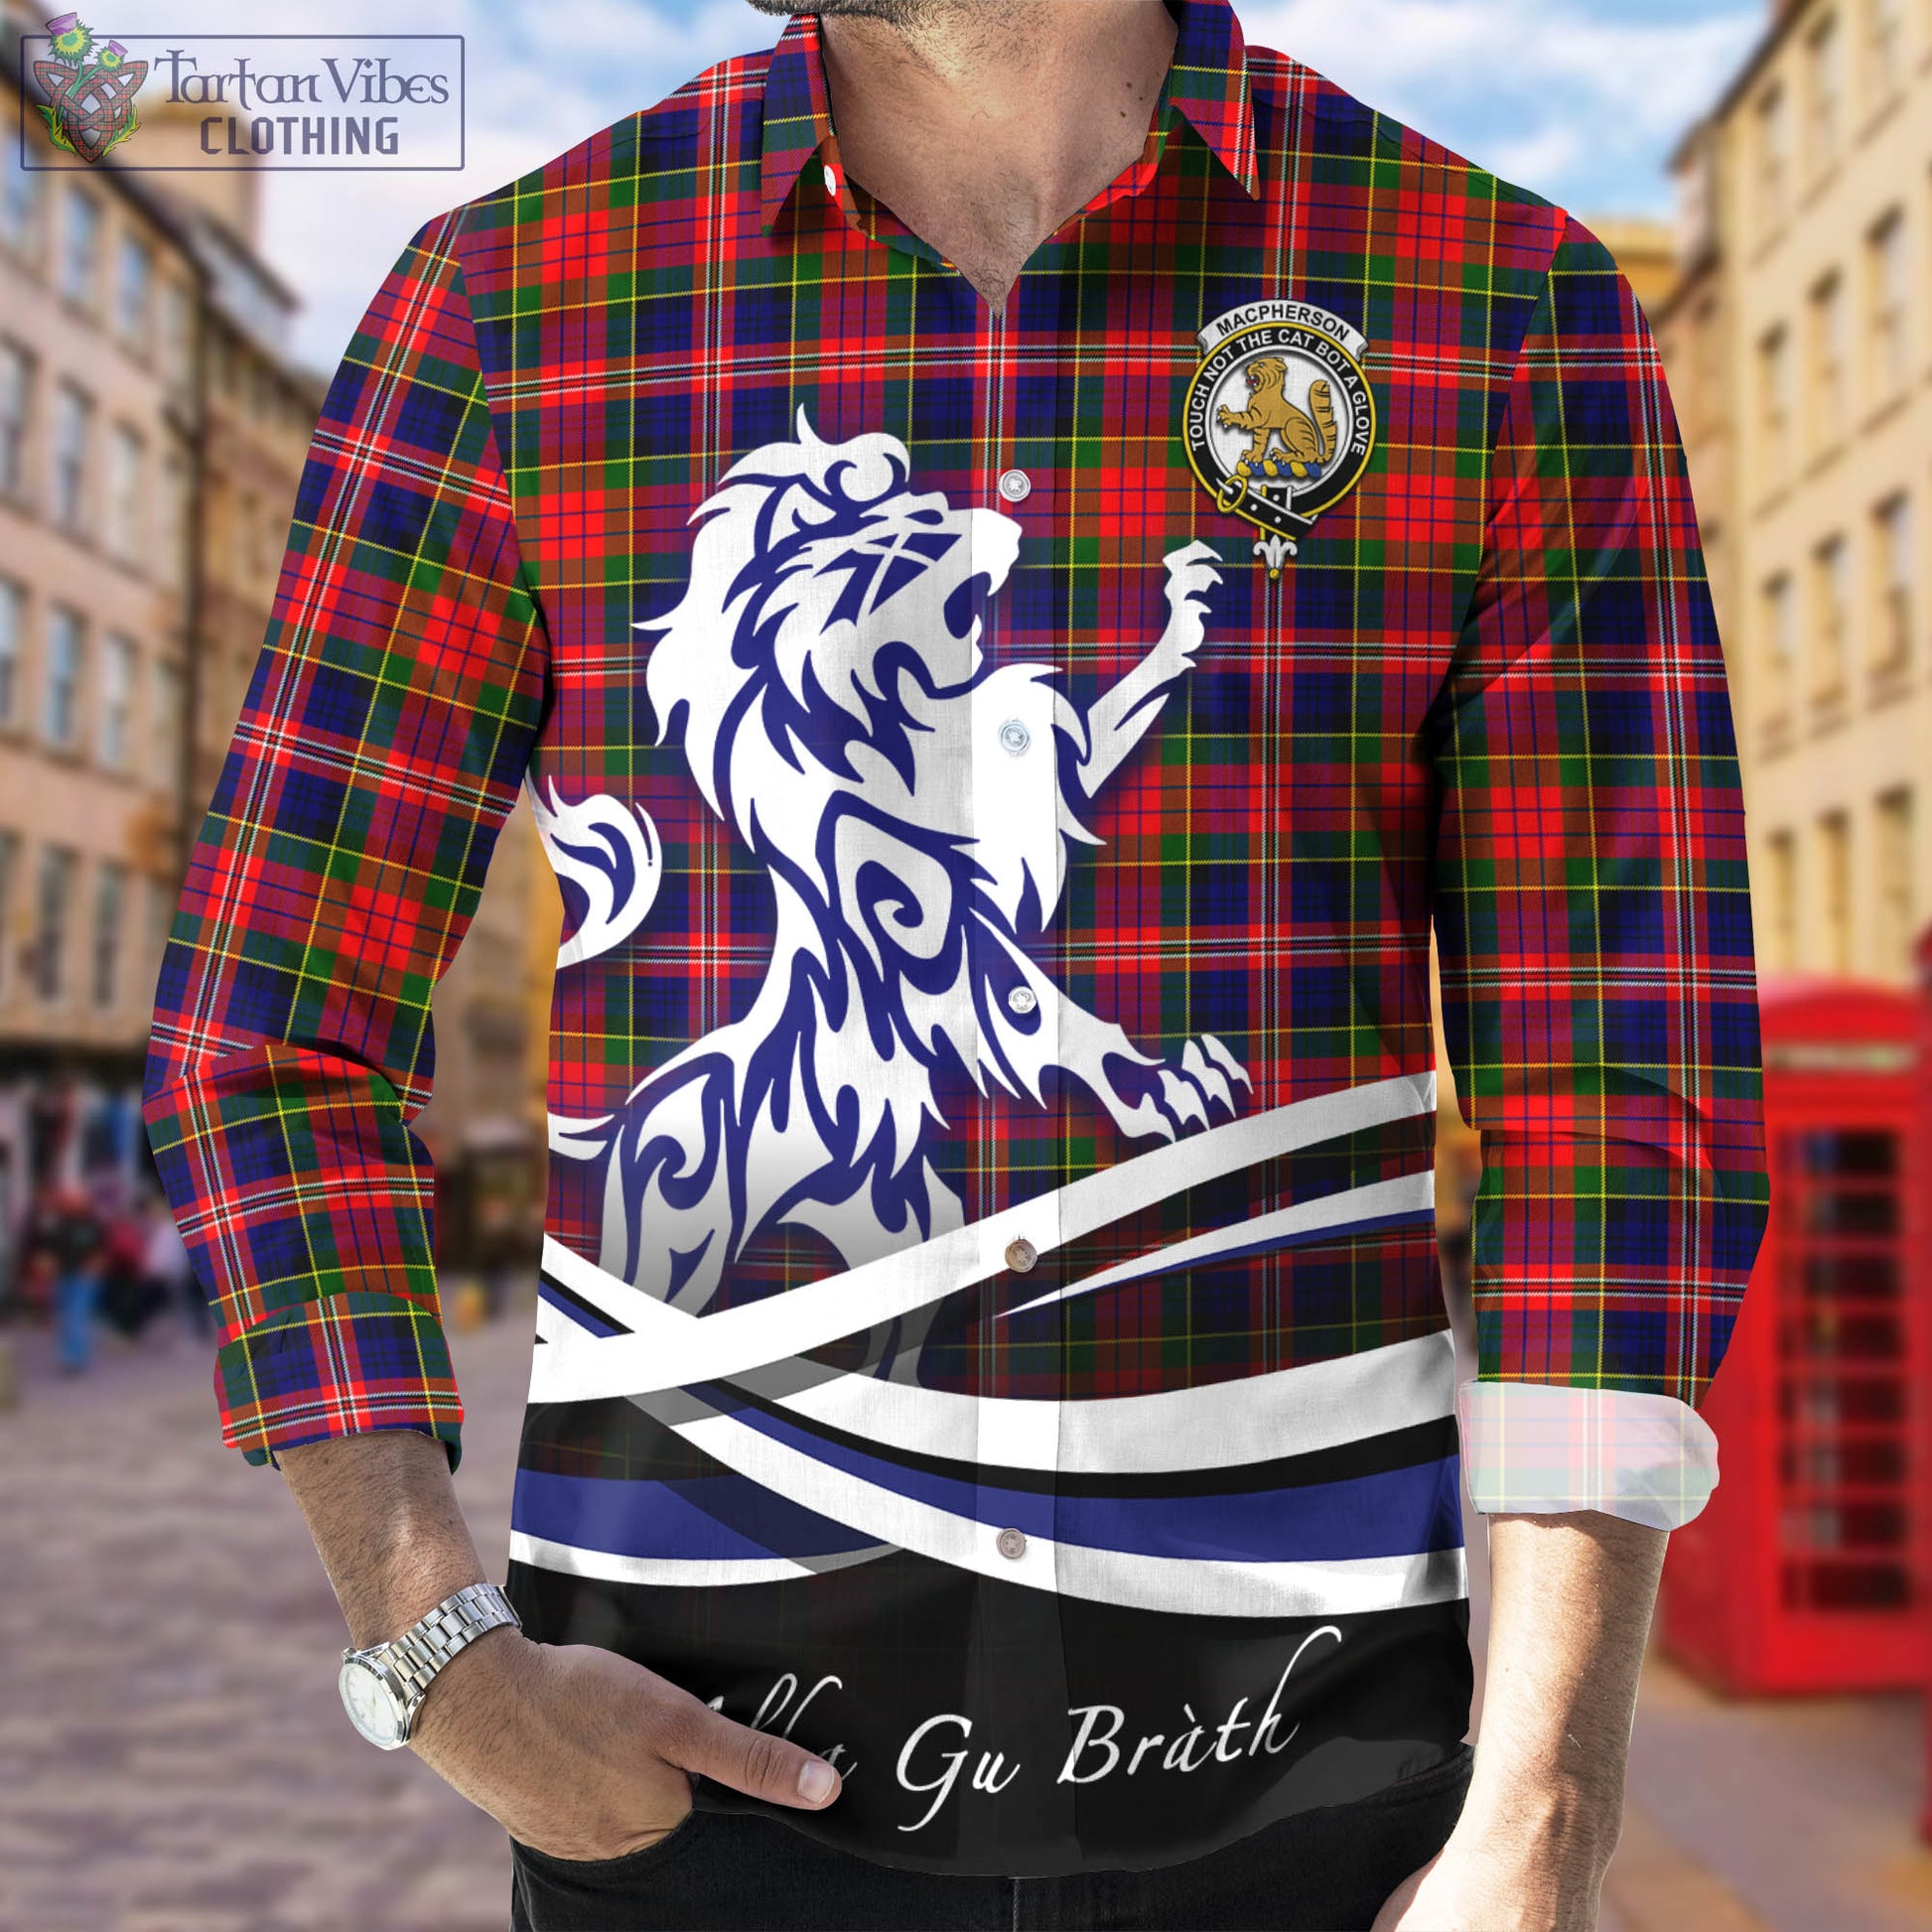 macpherson-modern-tartan-long-sleeve-button-up-shirt-with-alba-gu-brath-regal-lion-emblem